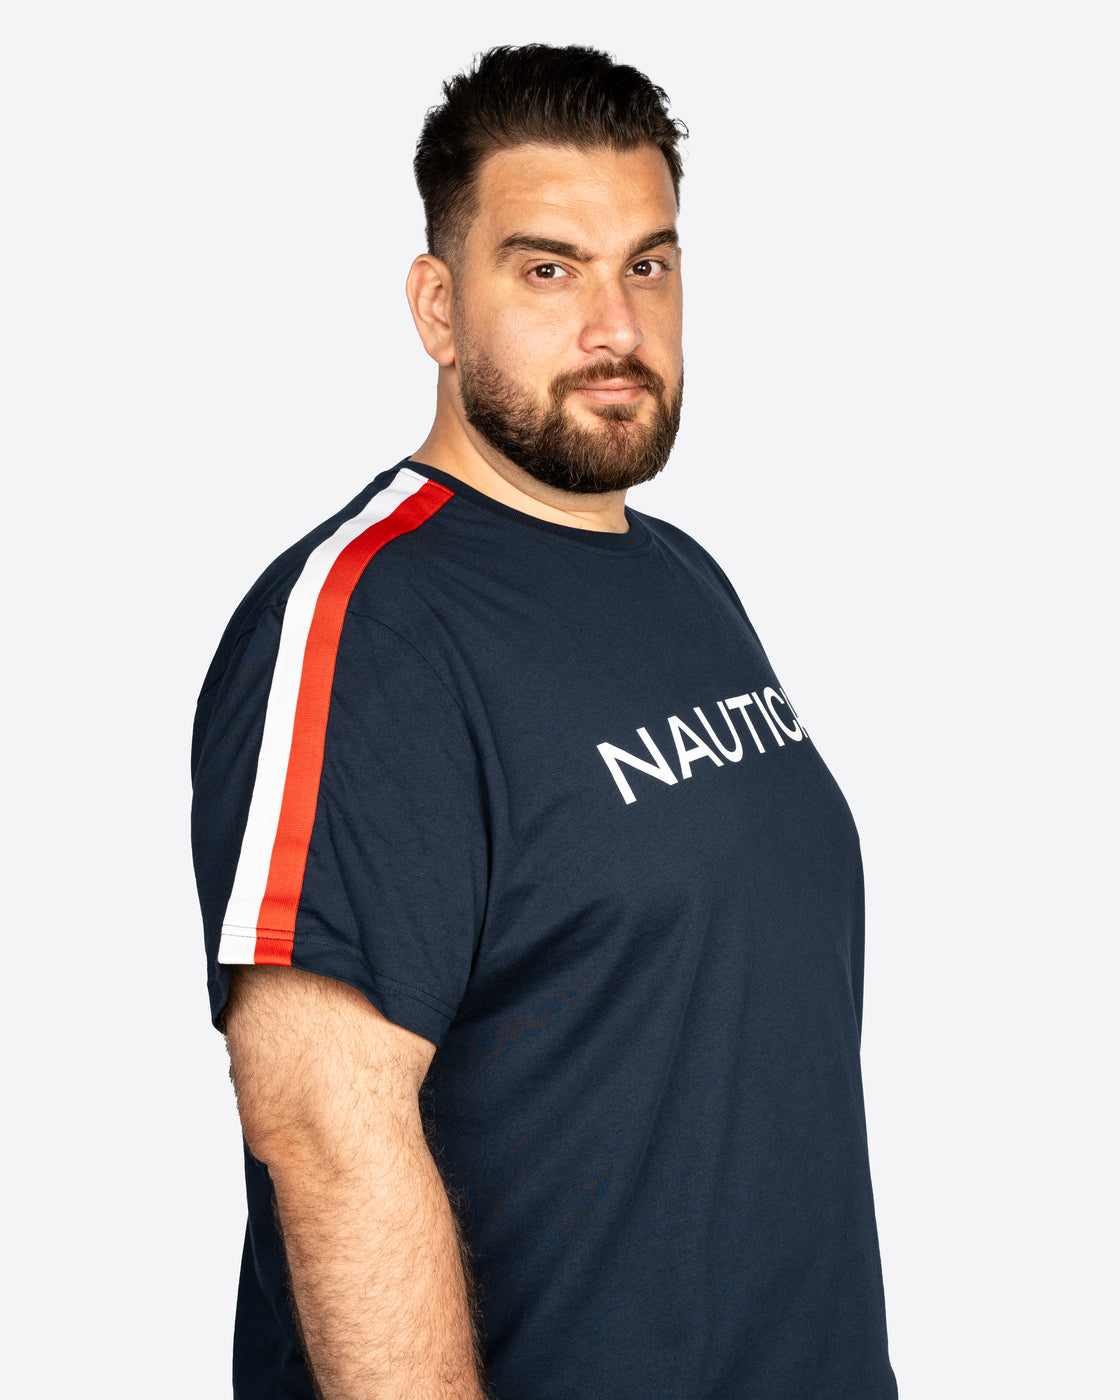 Nautica Crewneck Cotton T-Shirt W/ Branded Shoulder Tape